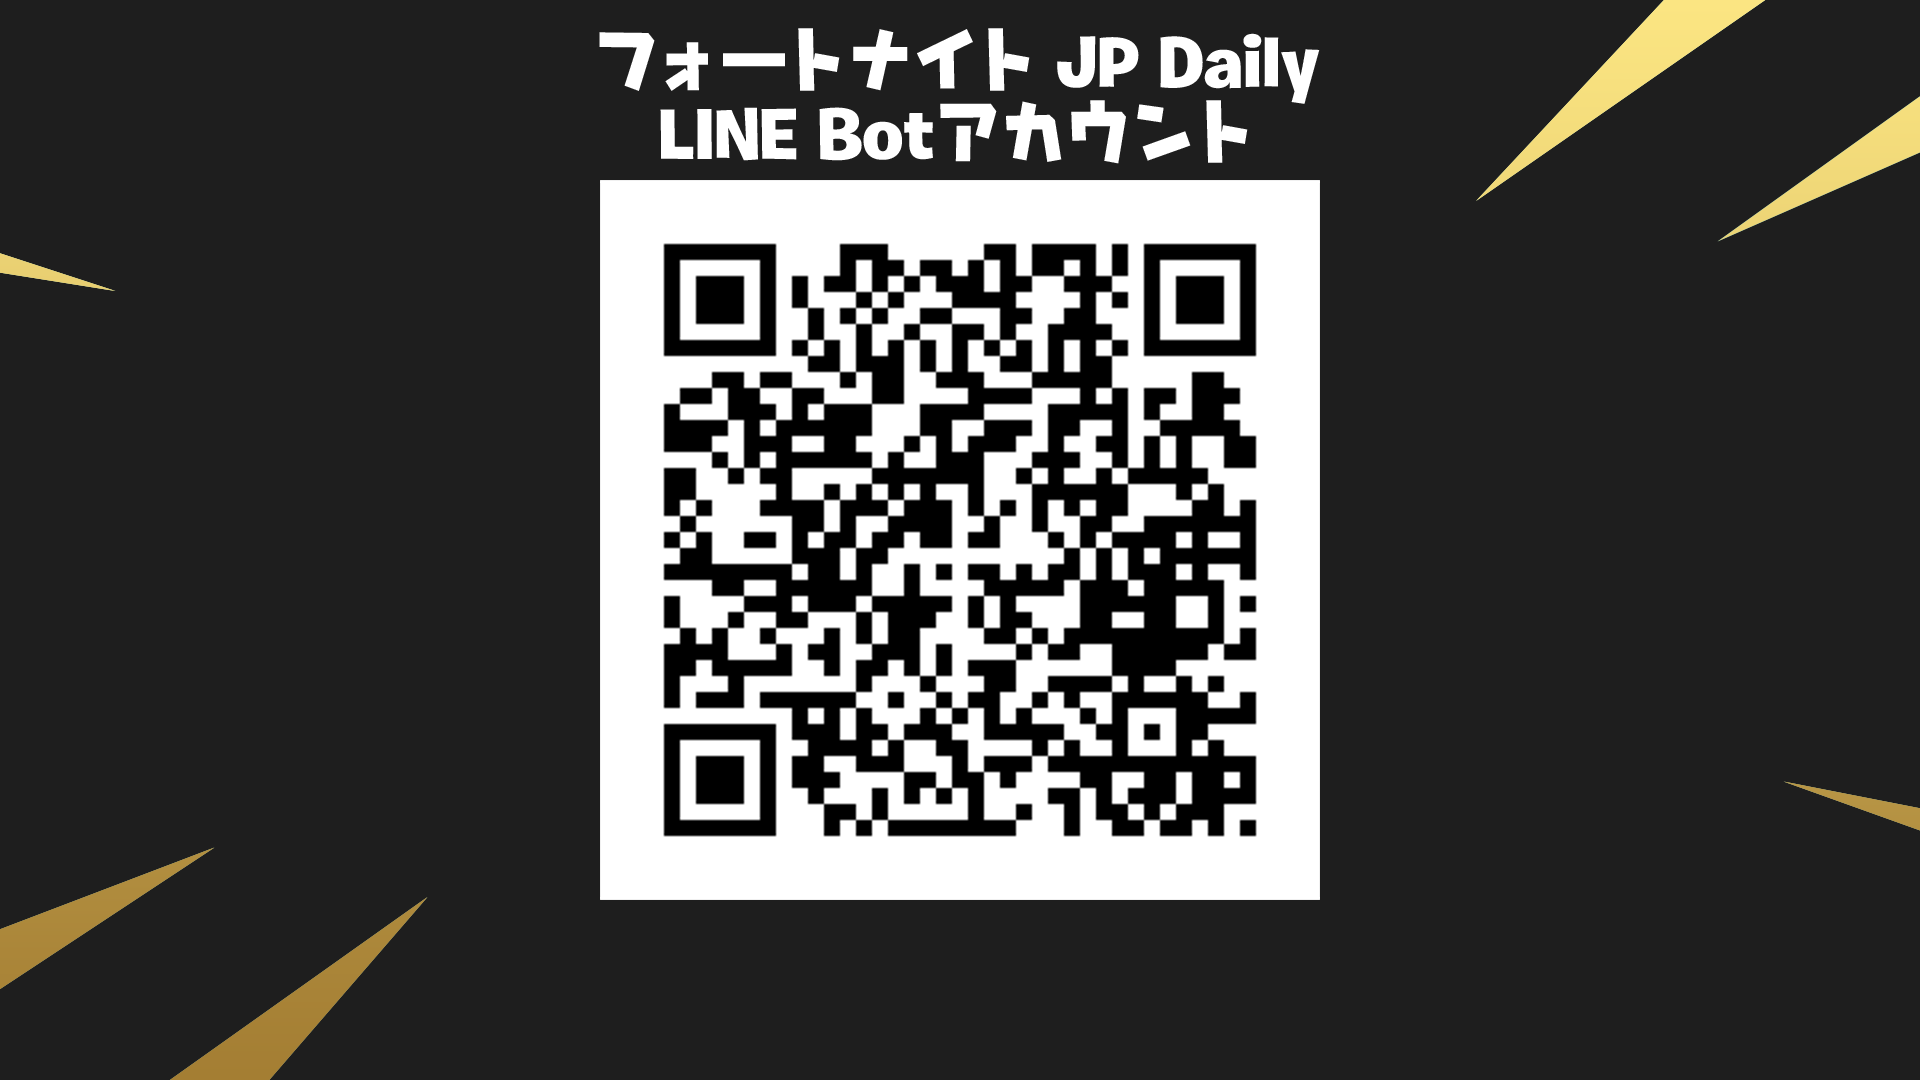 フォートナイト JP Daily/LINE Bot登録方法と使い方